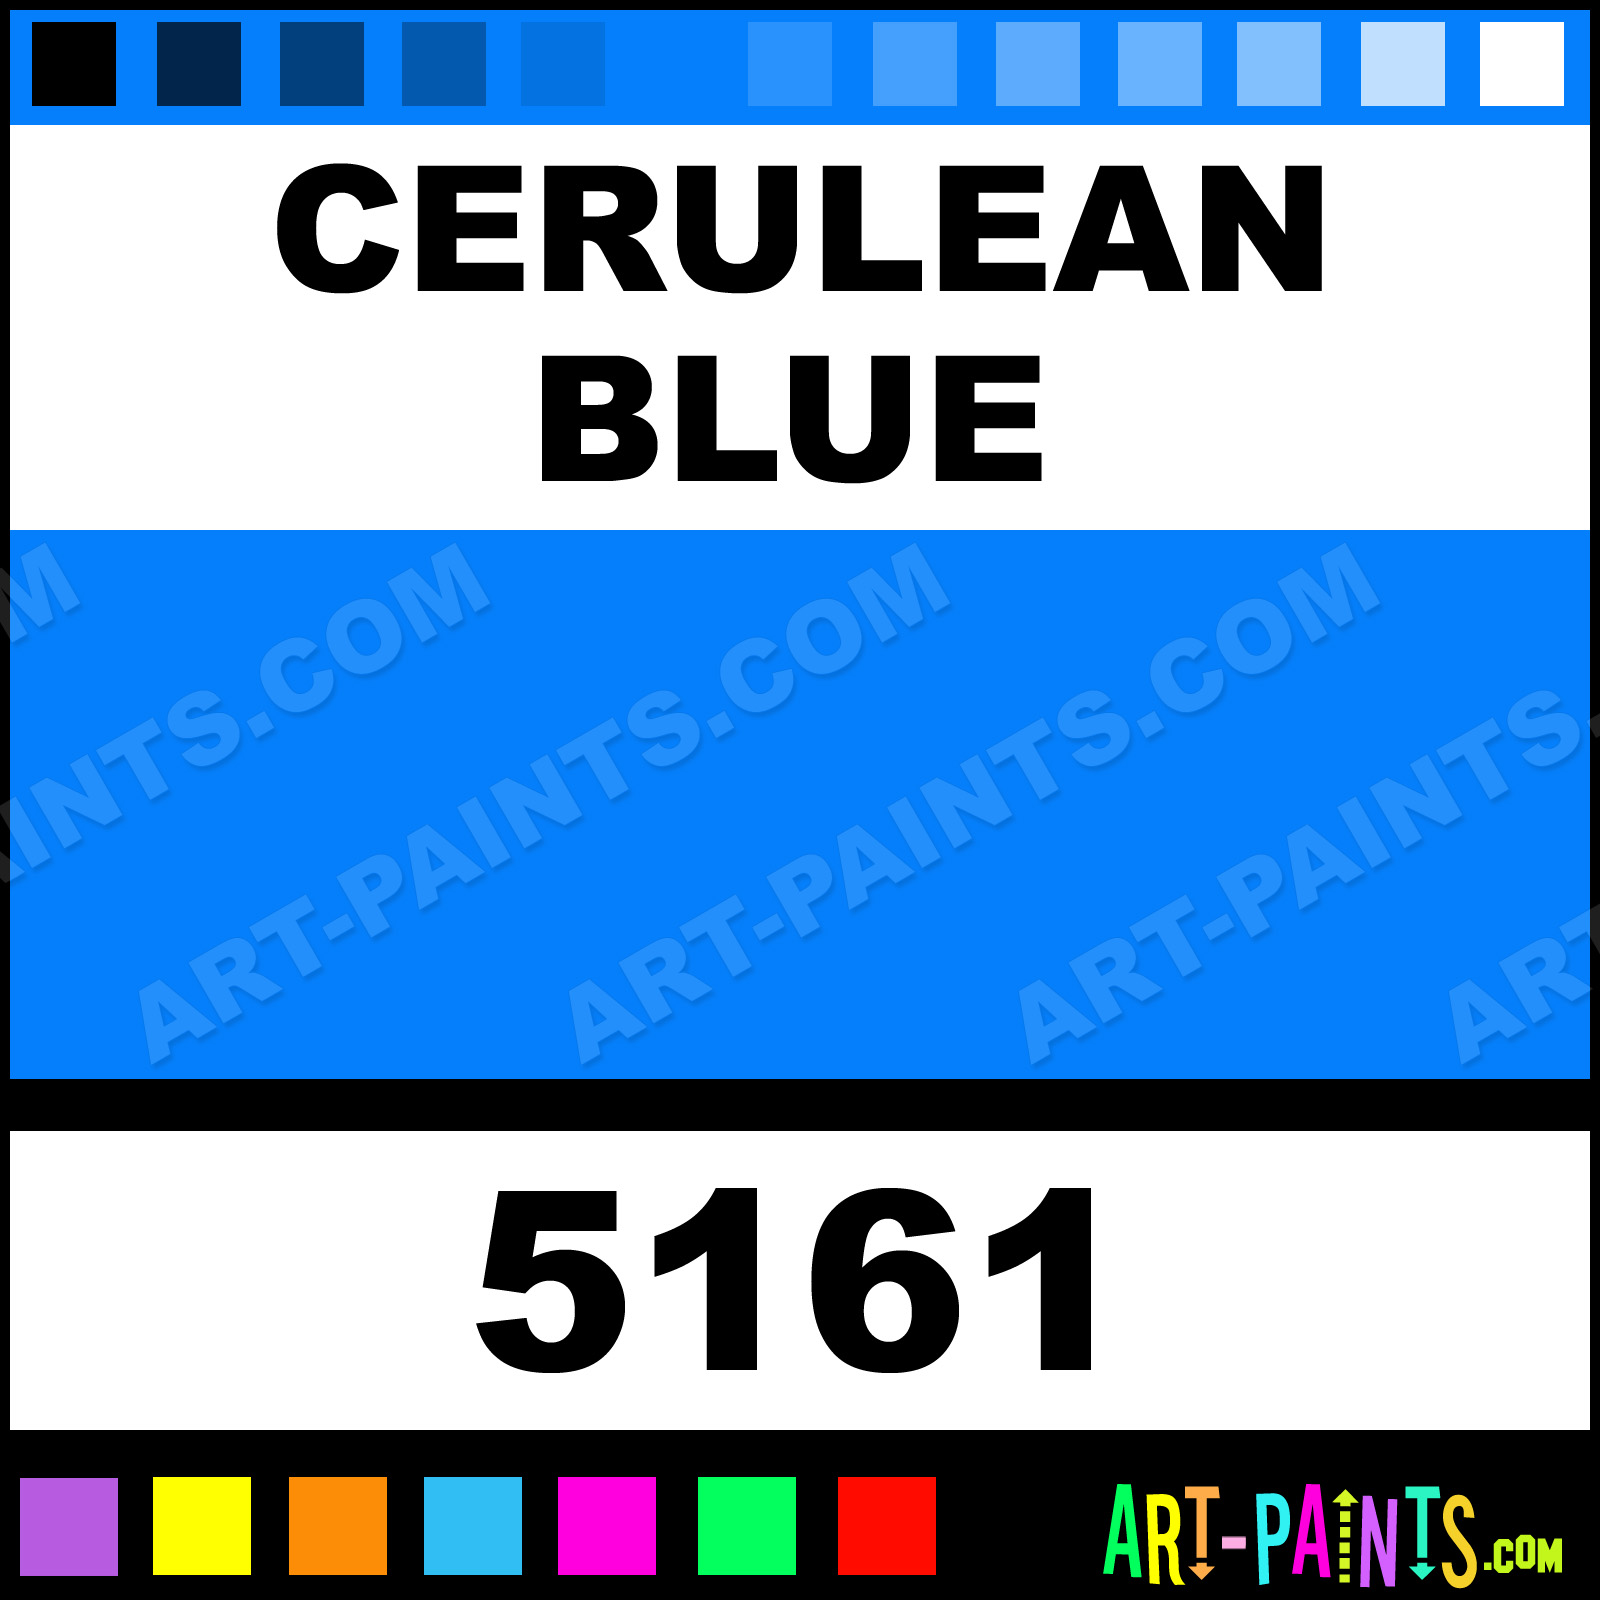 http://www.art-paints.com/Paints/Watercolor/Van-Gogh/Cerulean-Blue/Cerulean-Blue-xlg.jpg